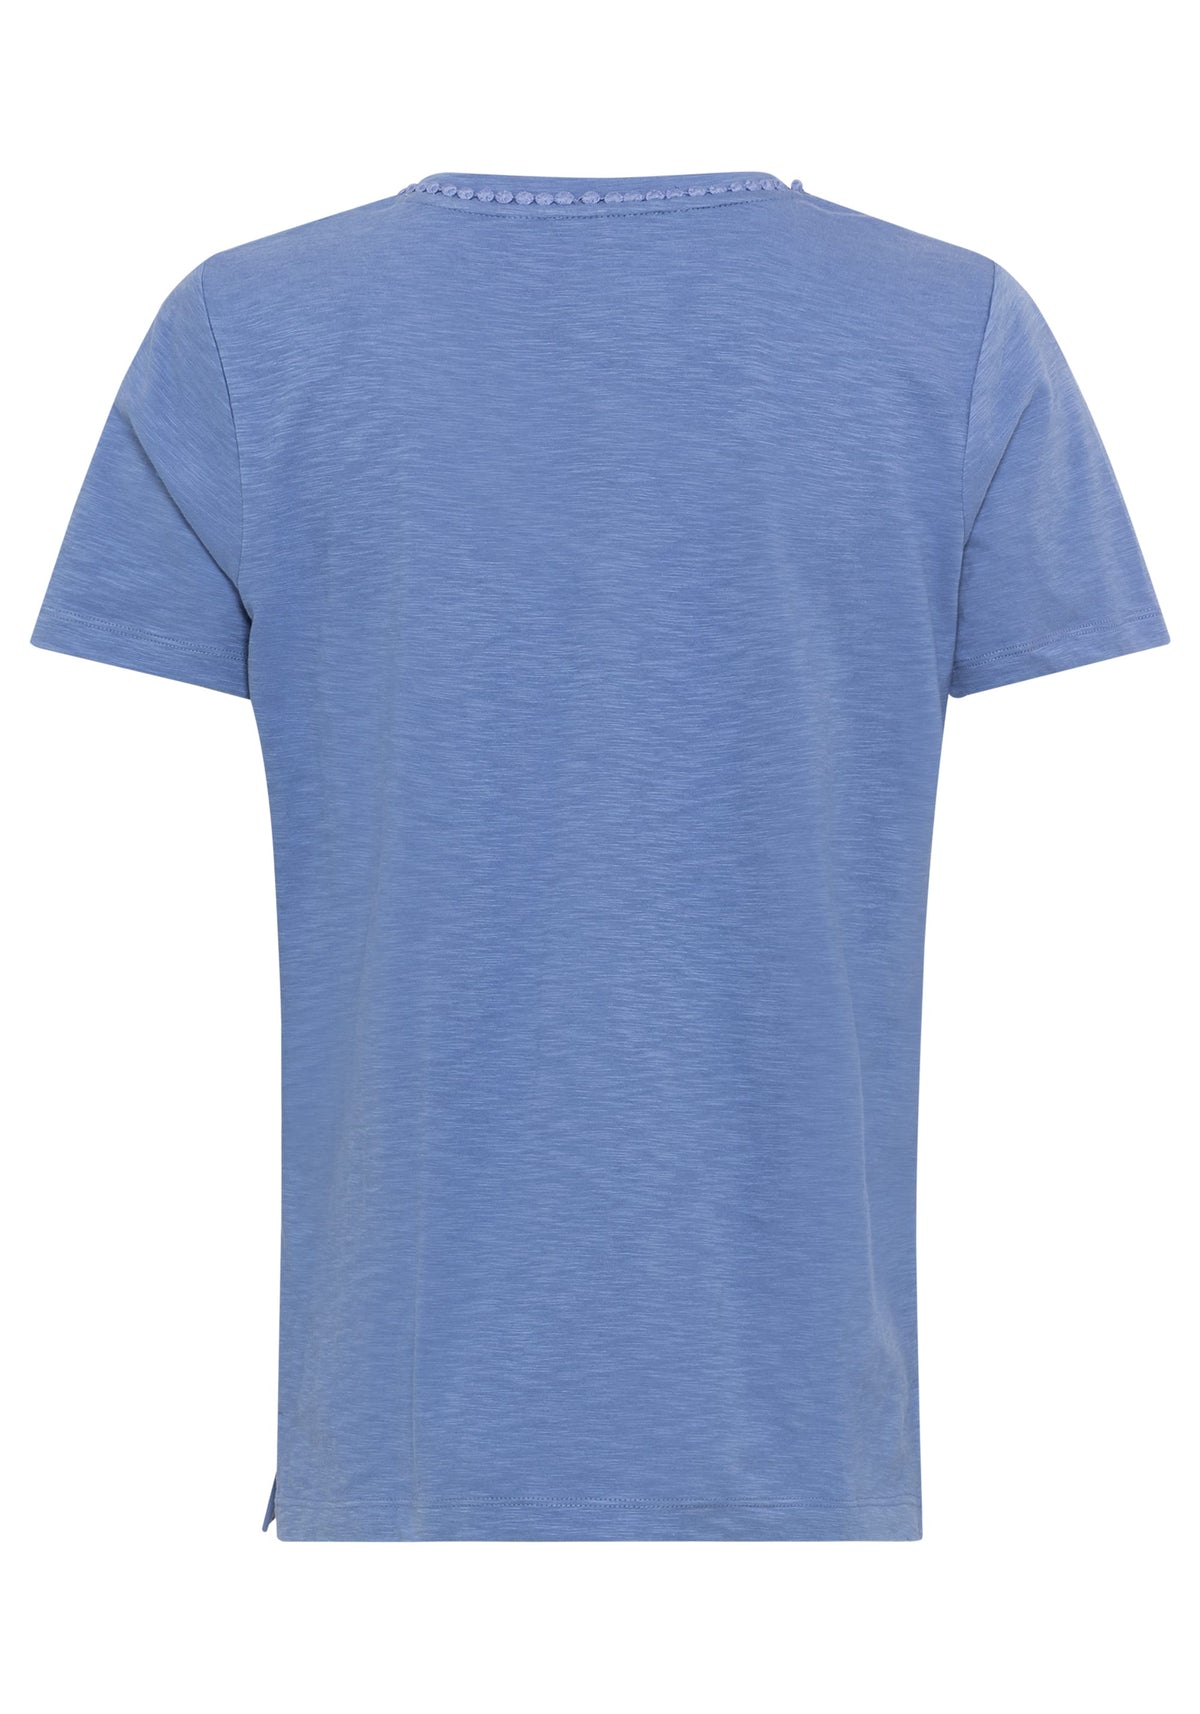 Tee-shirt à manches courtes 100% coton avec bordure brodée